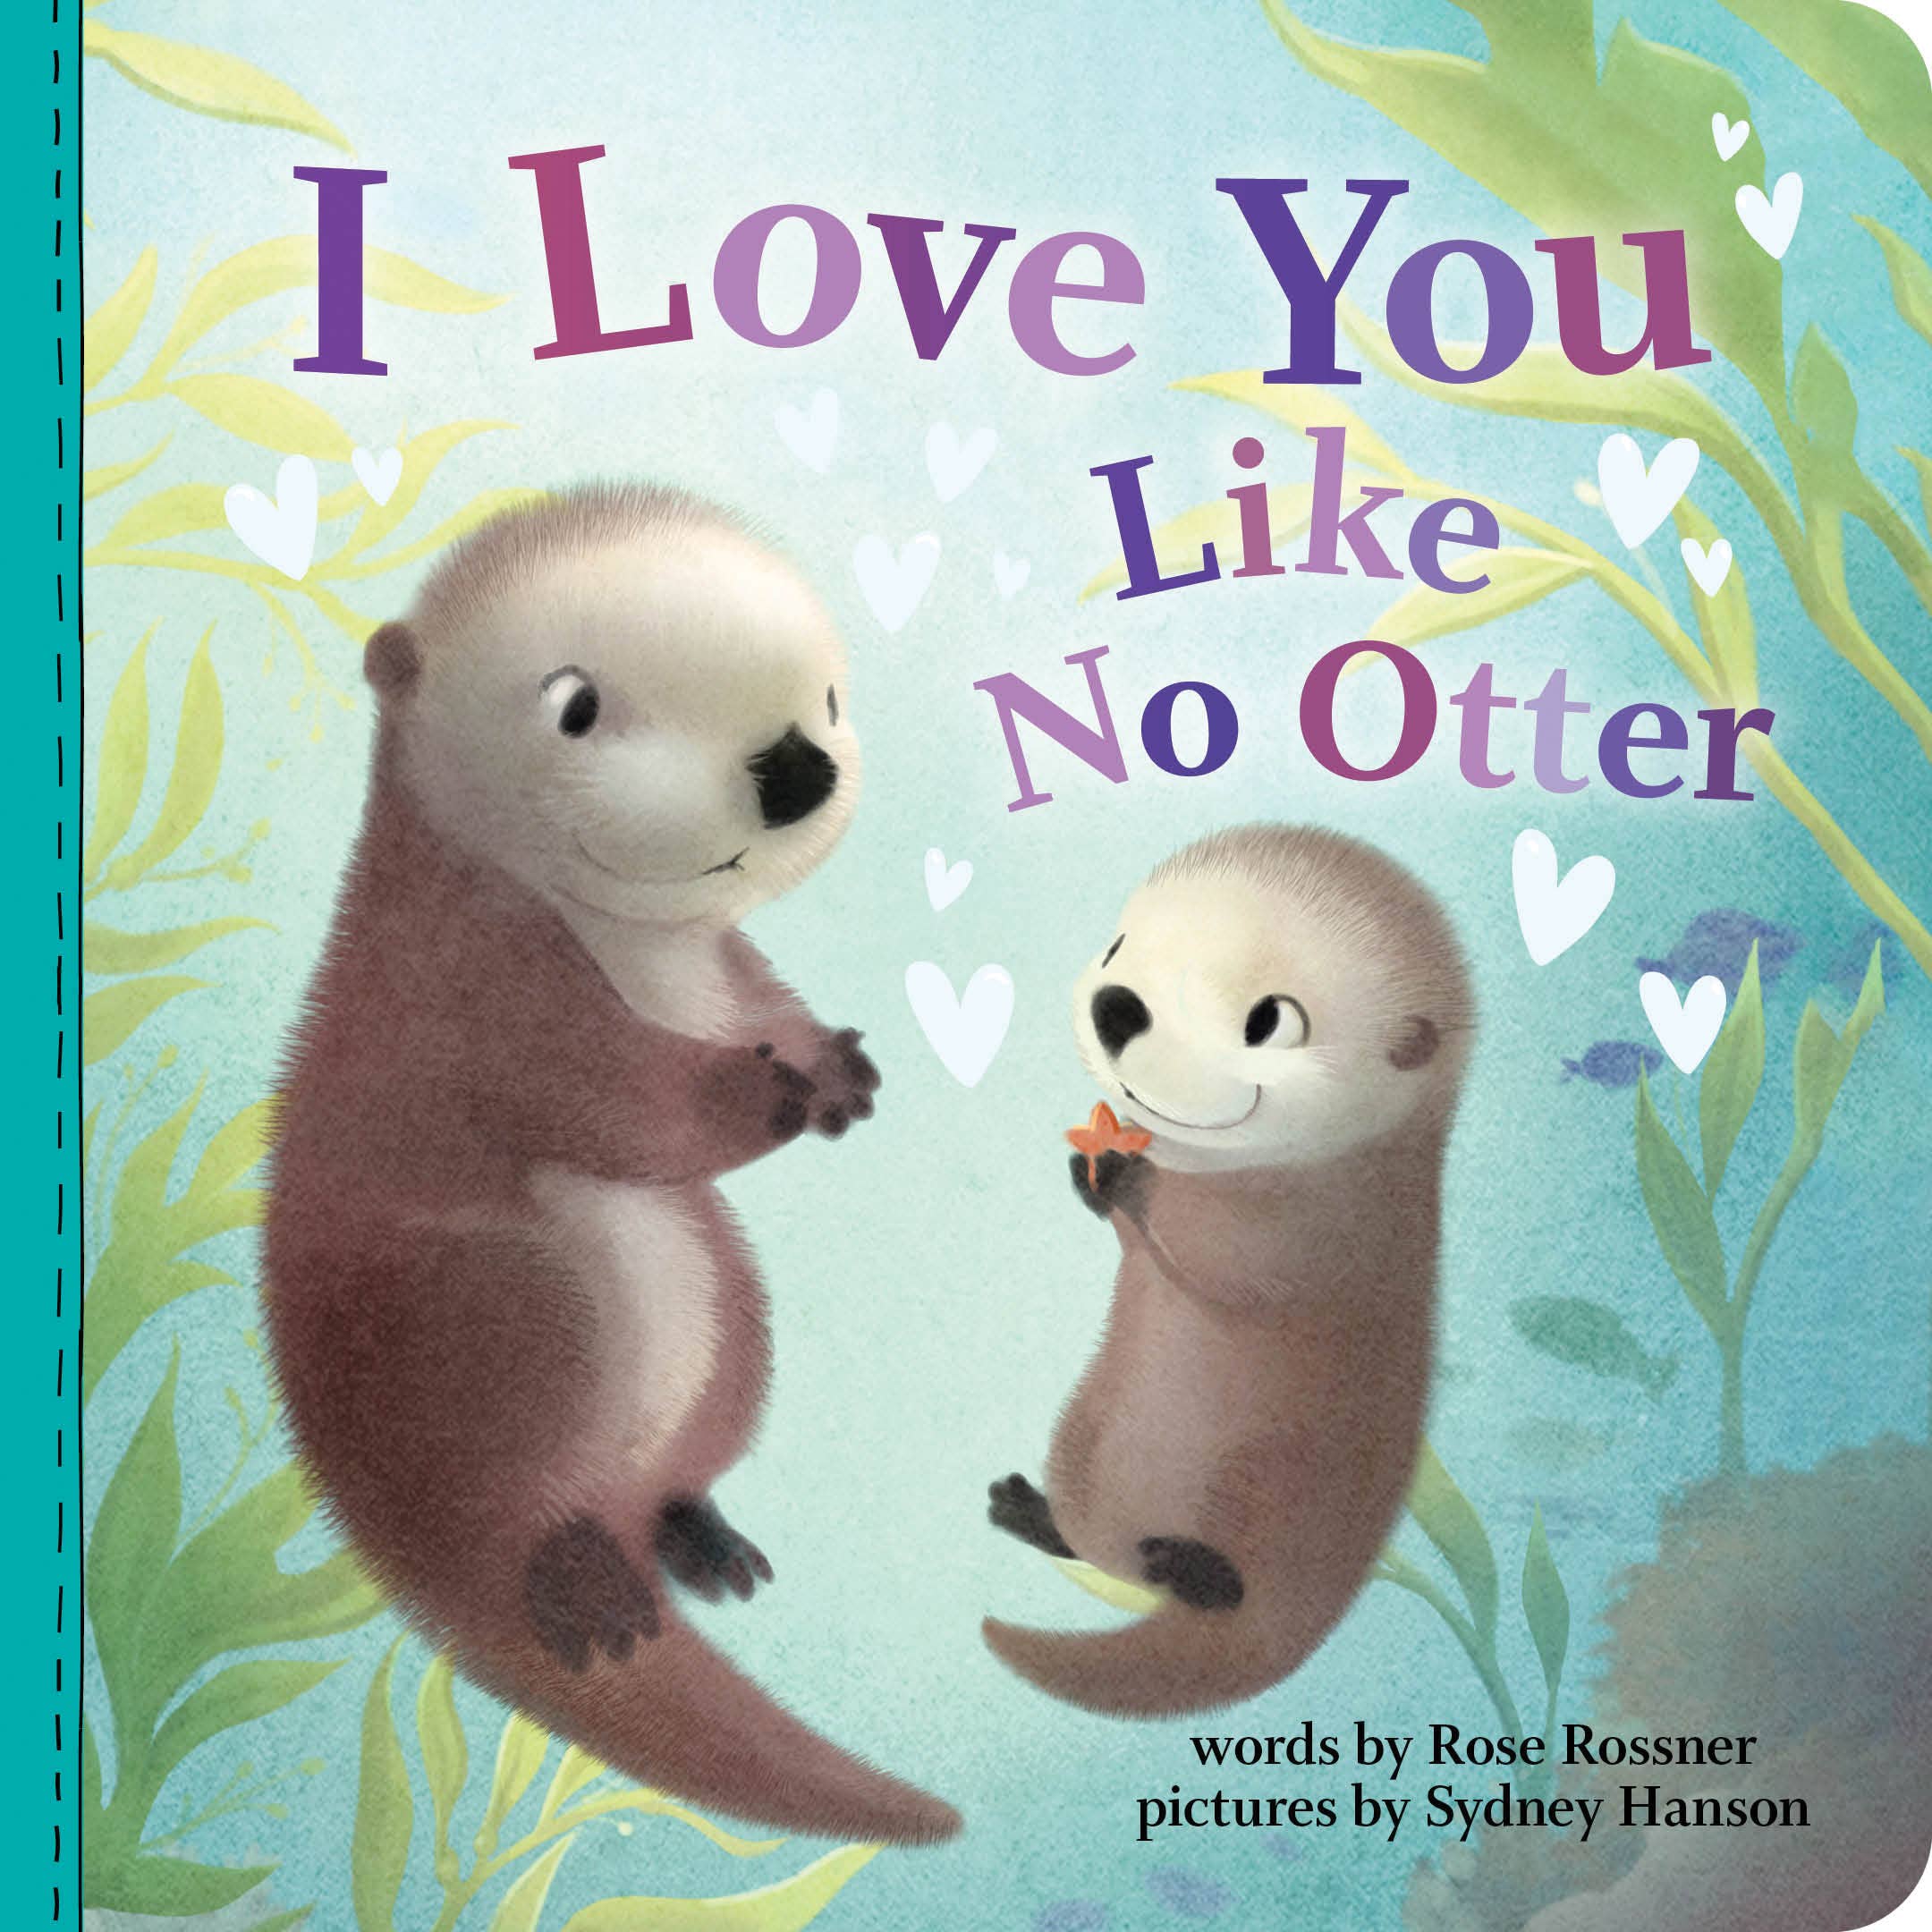 I Love You Like No Otter Children's book